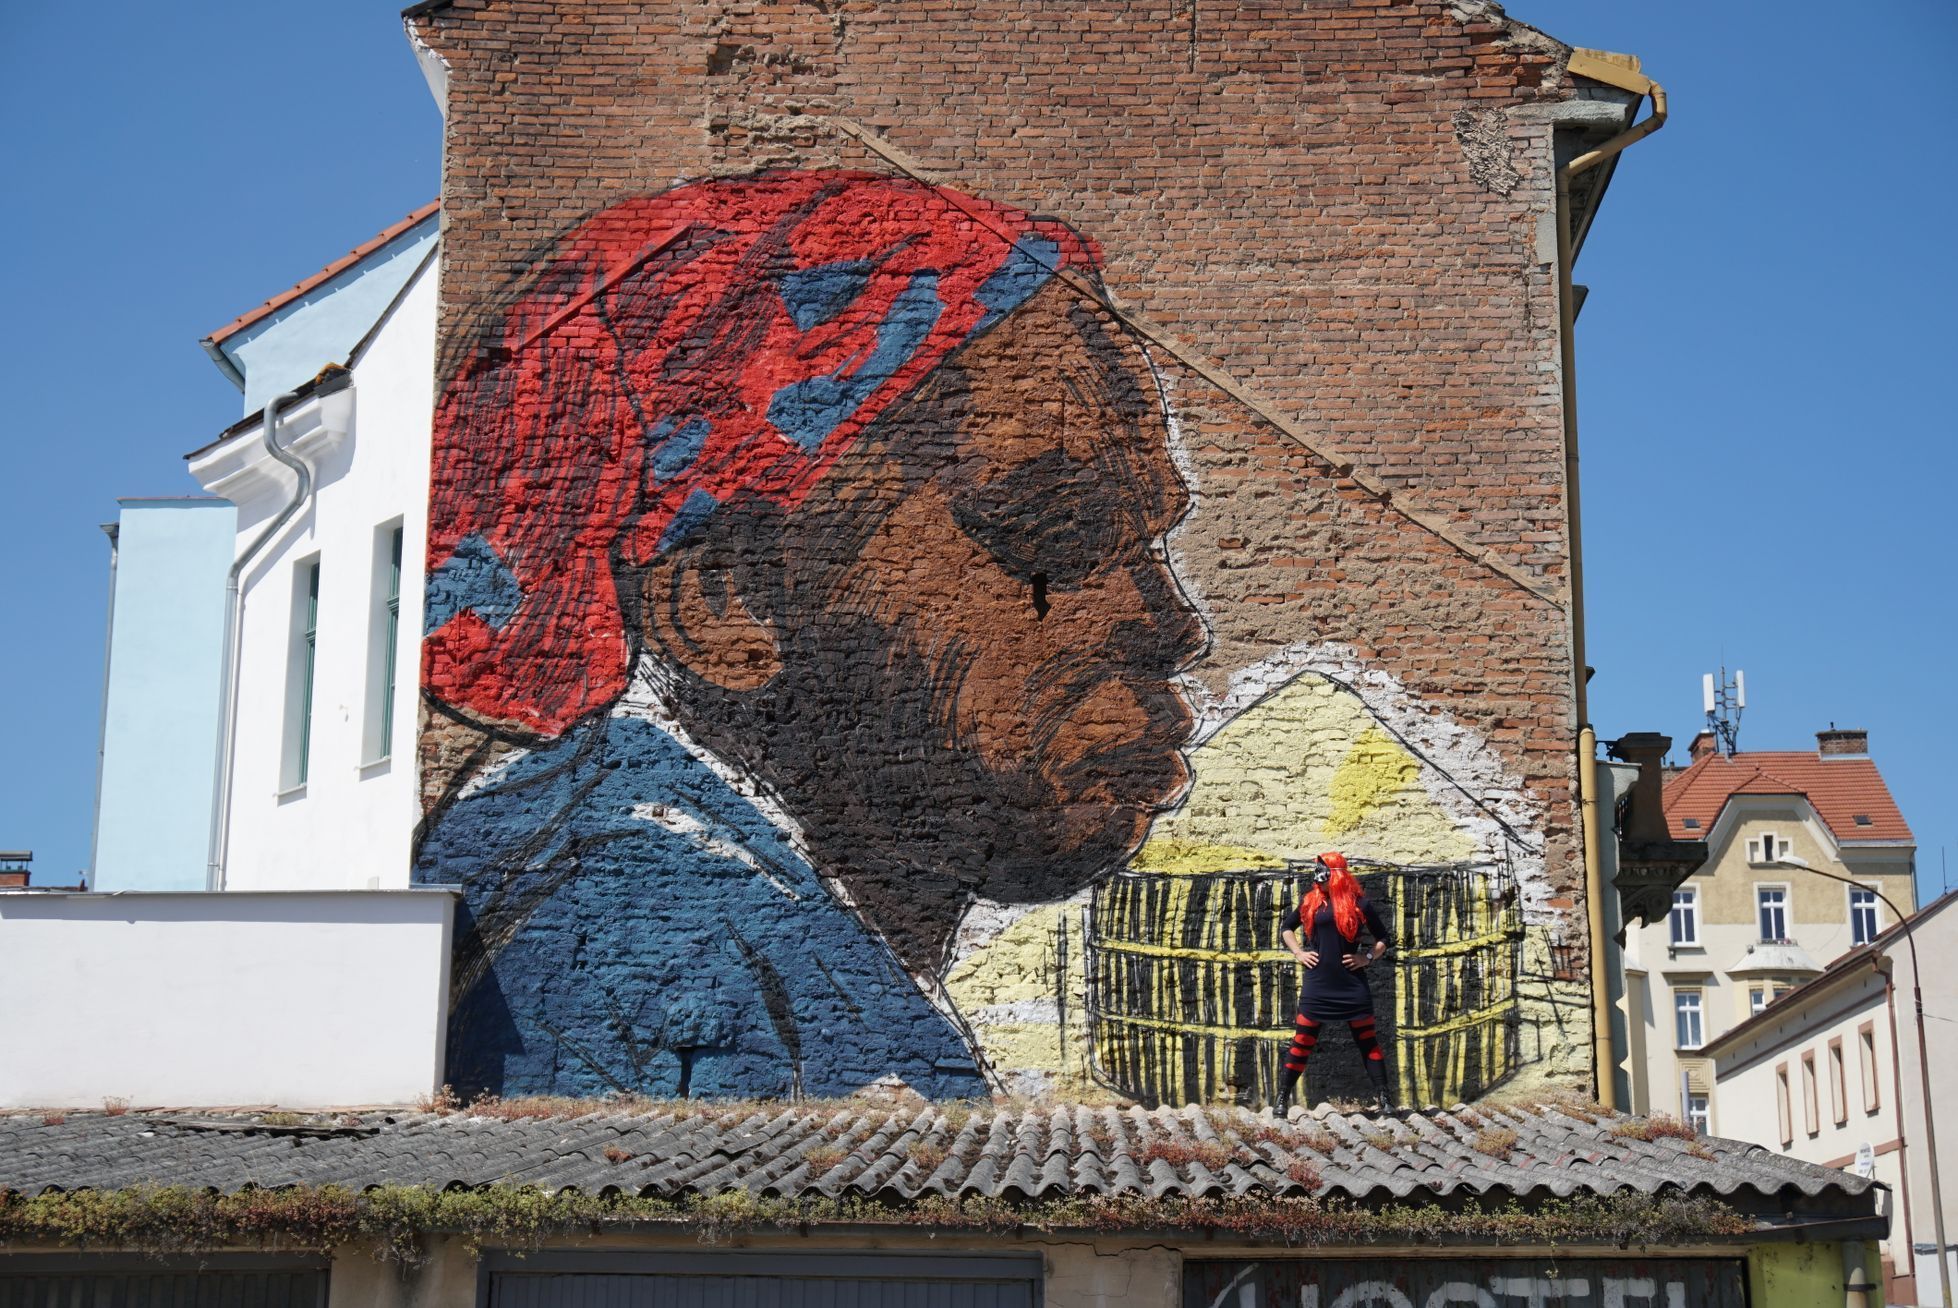 Výtvarnice Toy_Box vytvořila mural / graffiti v Plzni - Tváře klimatické změny, klima, Člověk v tísni